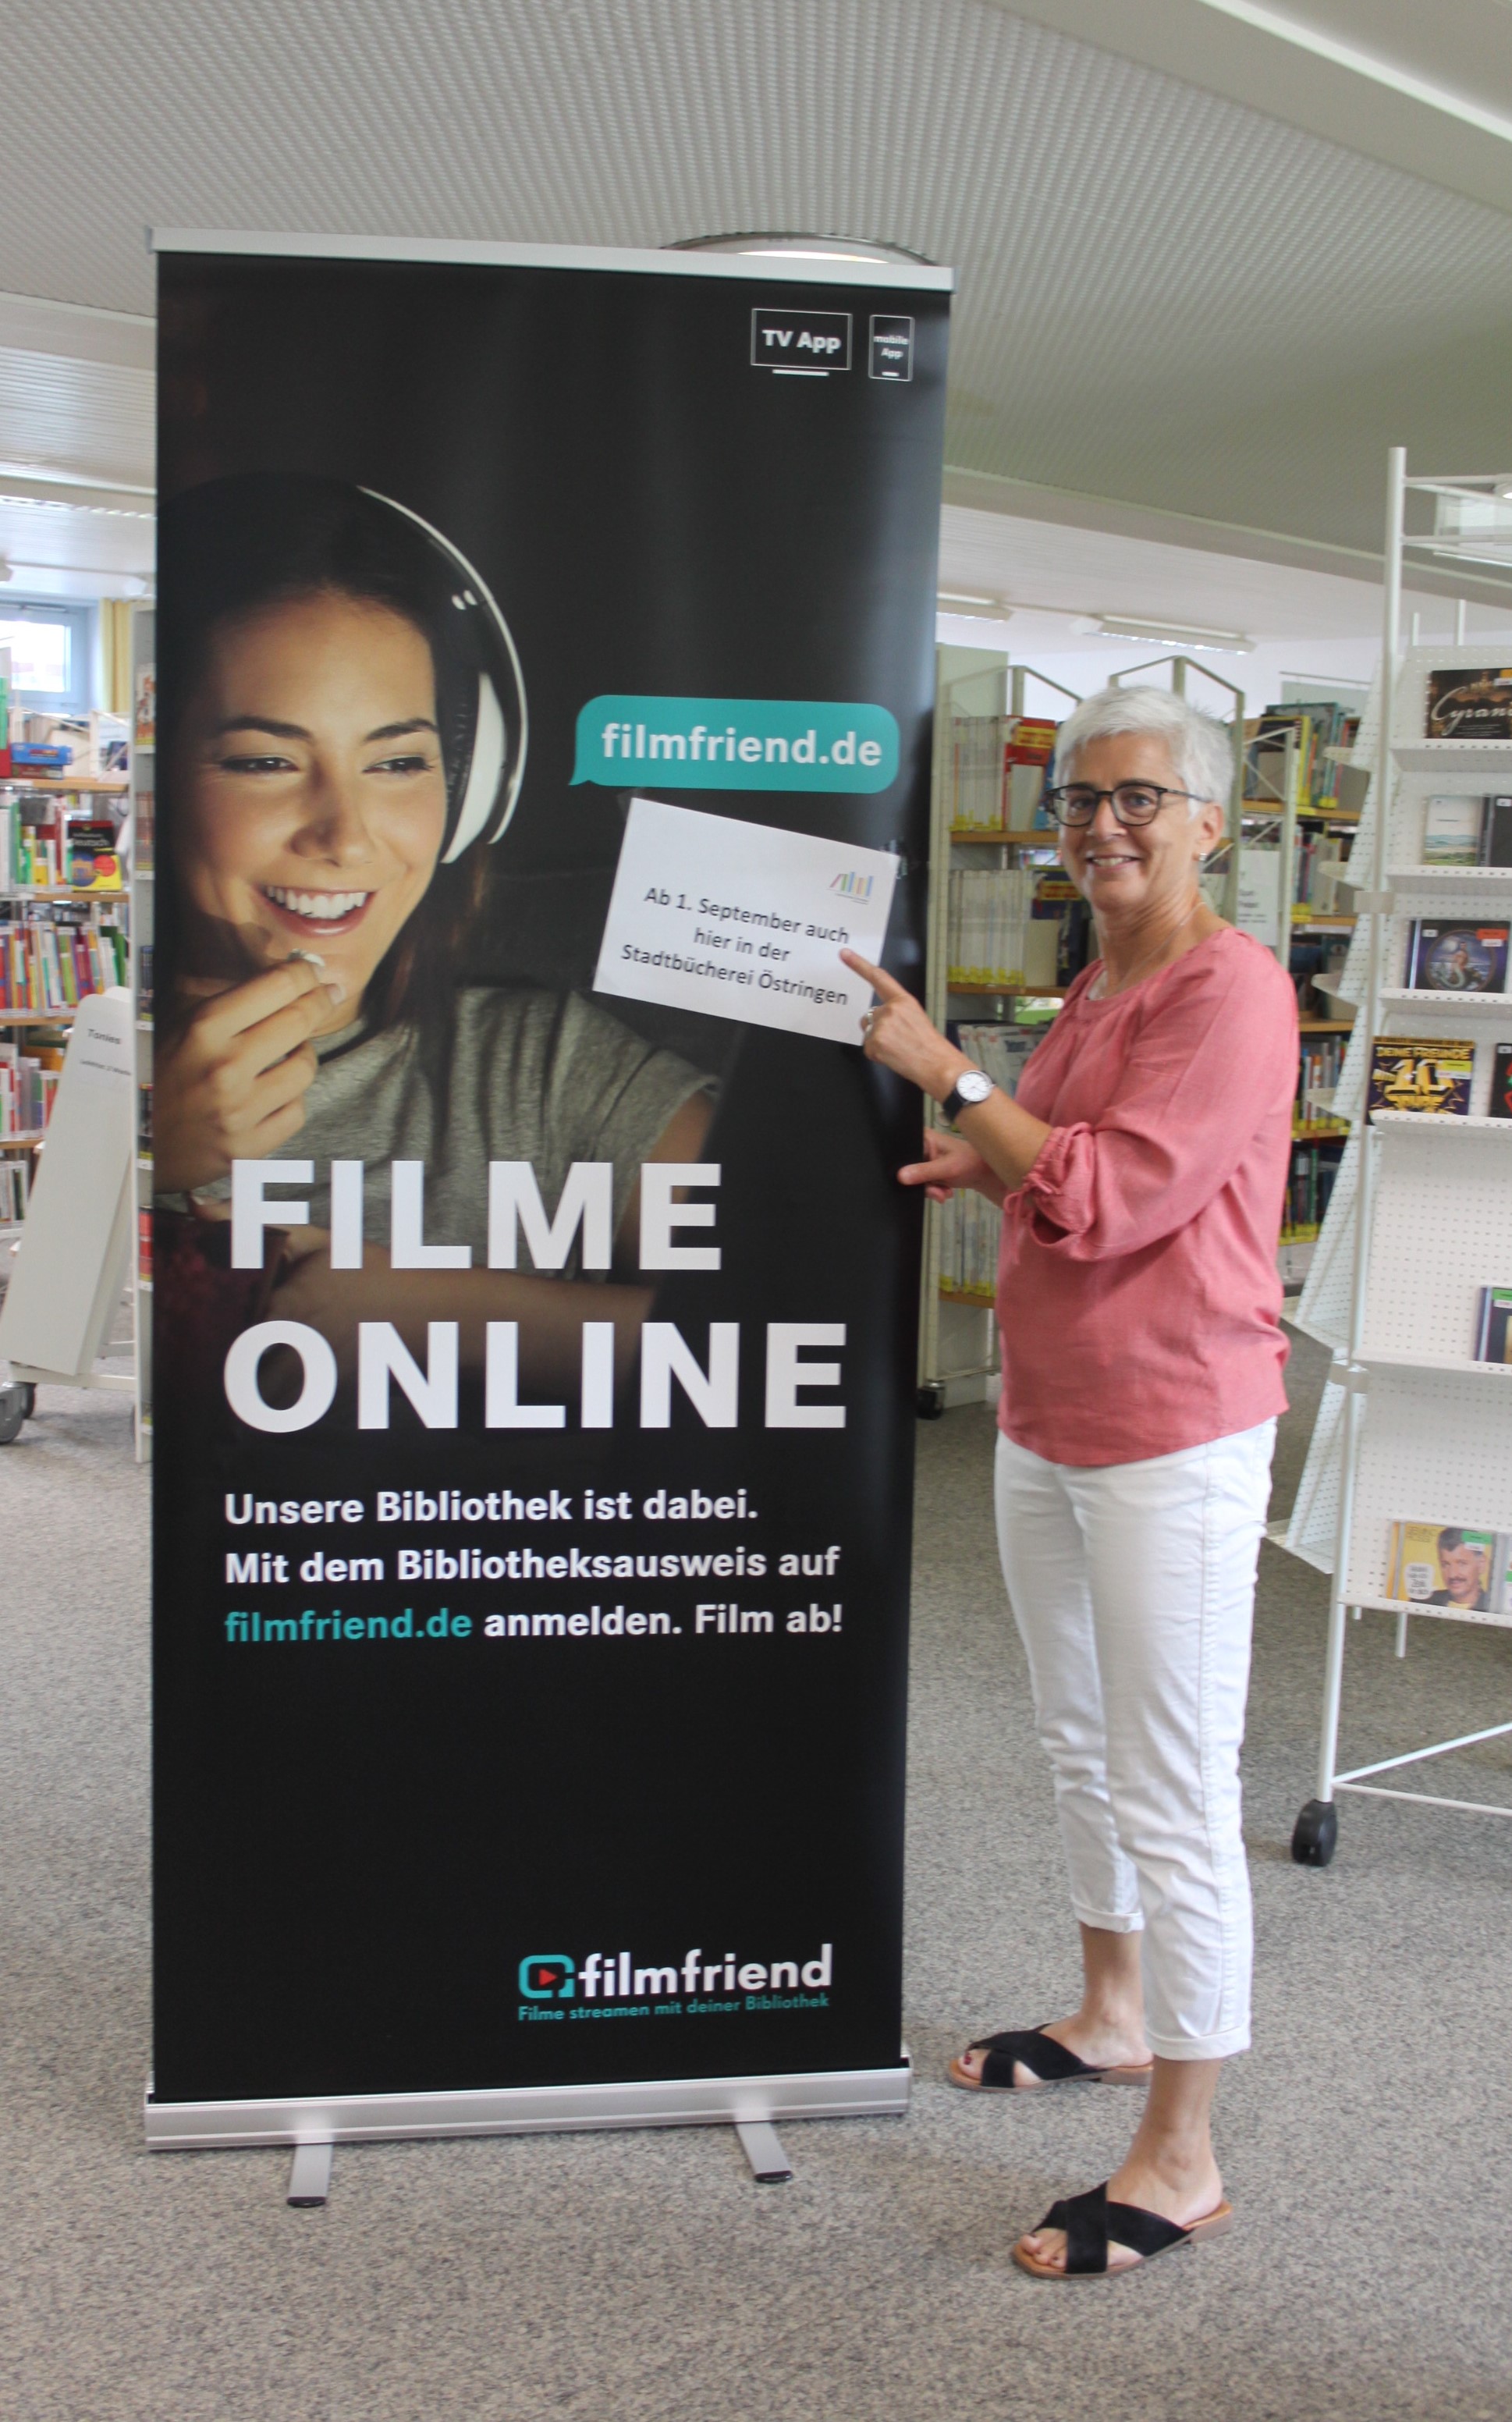  Mit einem Rollup macht die Stadtbücherei auf ihr neues digitales Angebot "filmfriend" aufmerksam. 